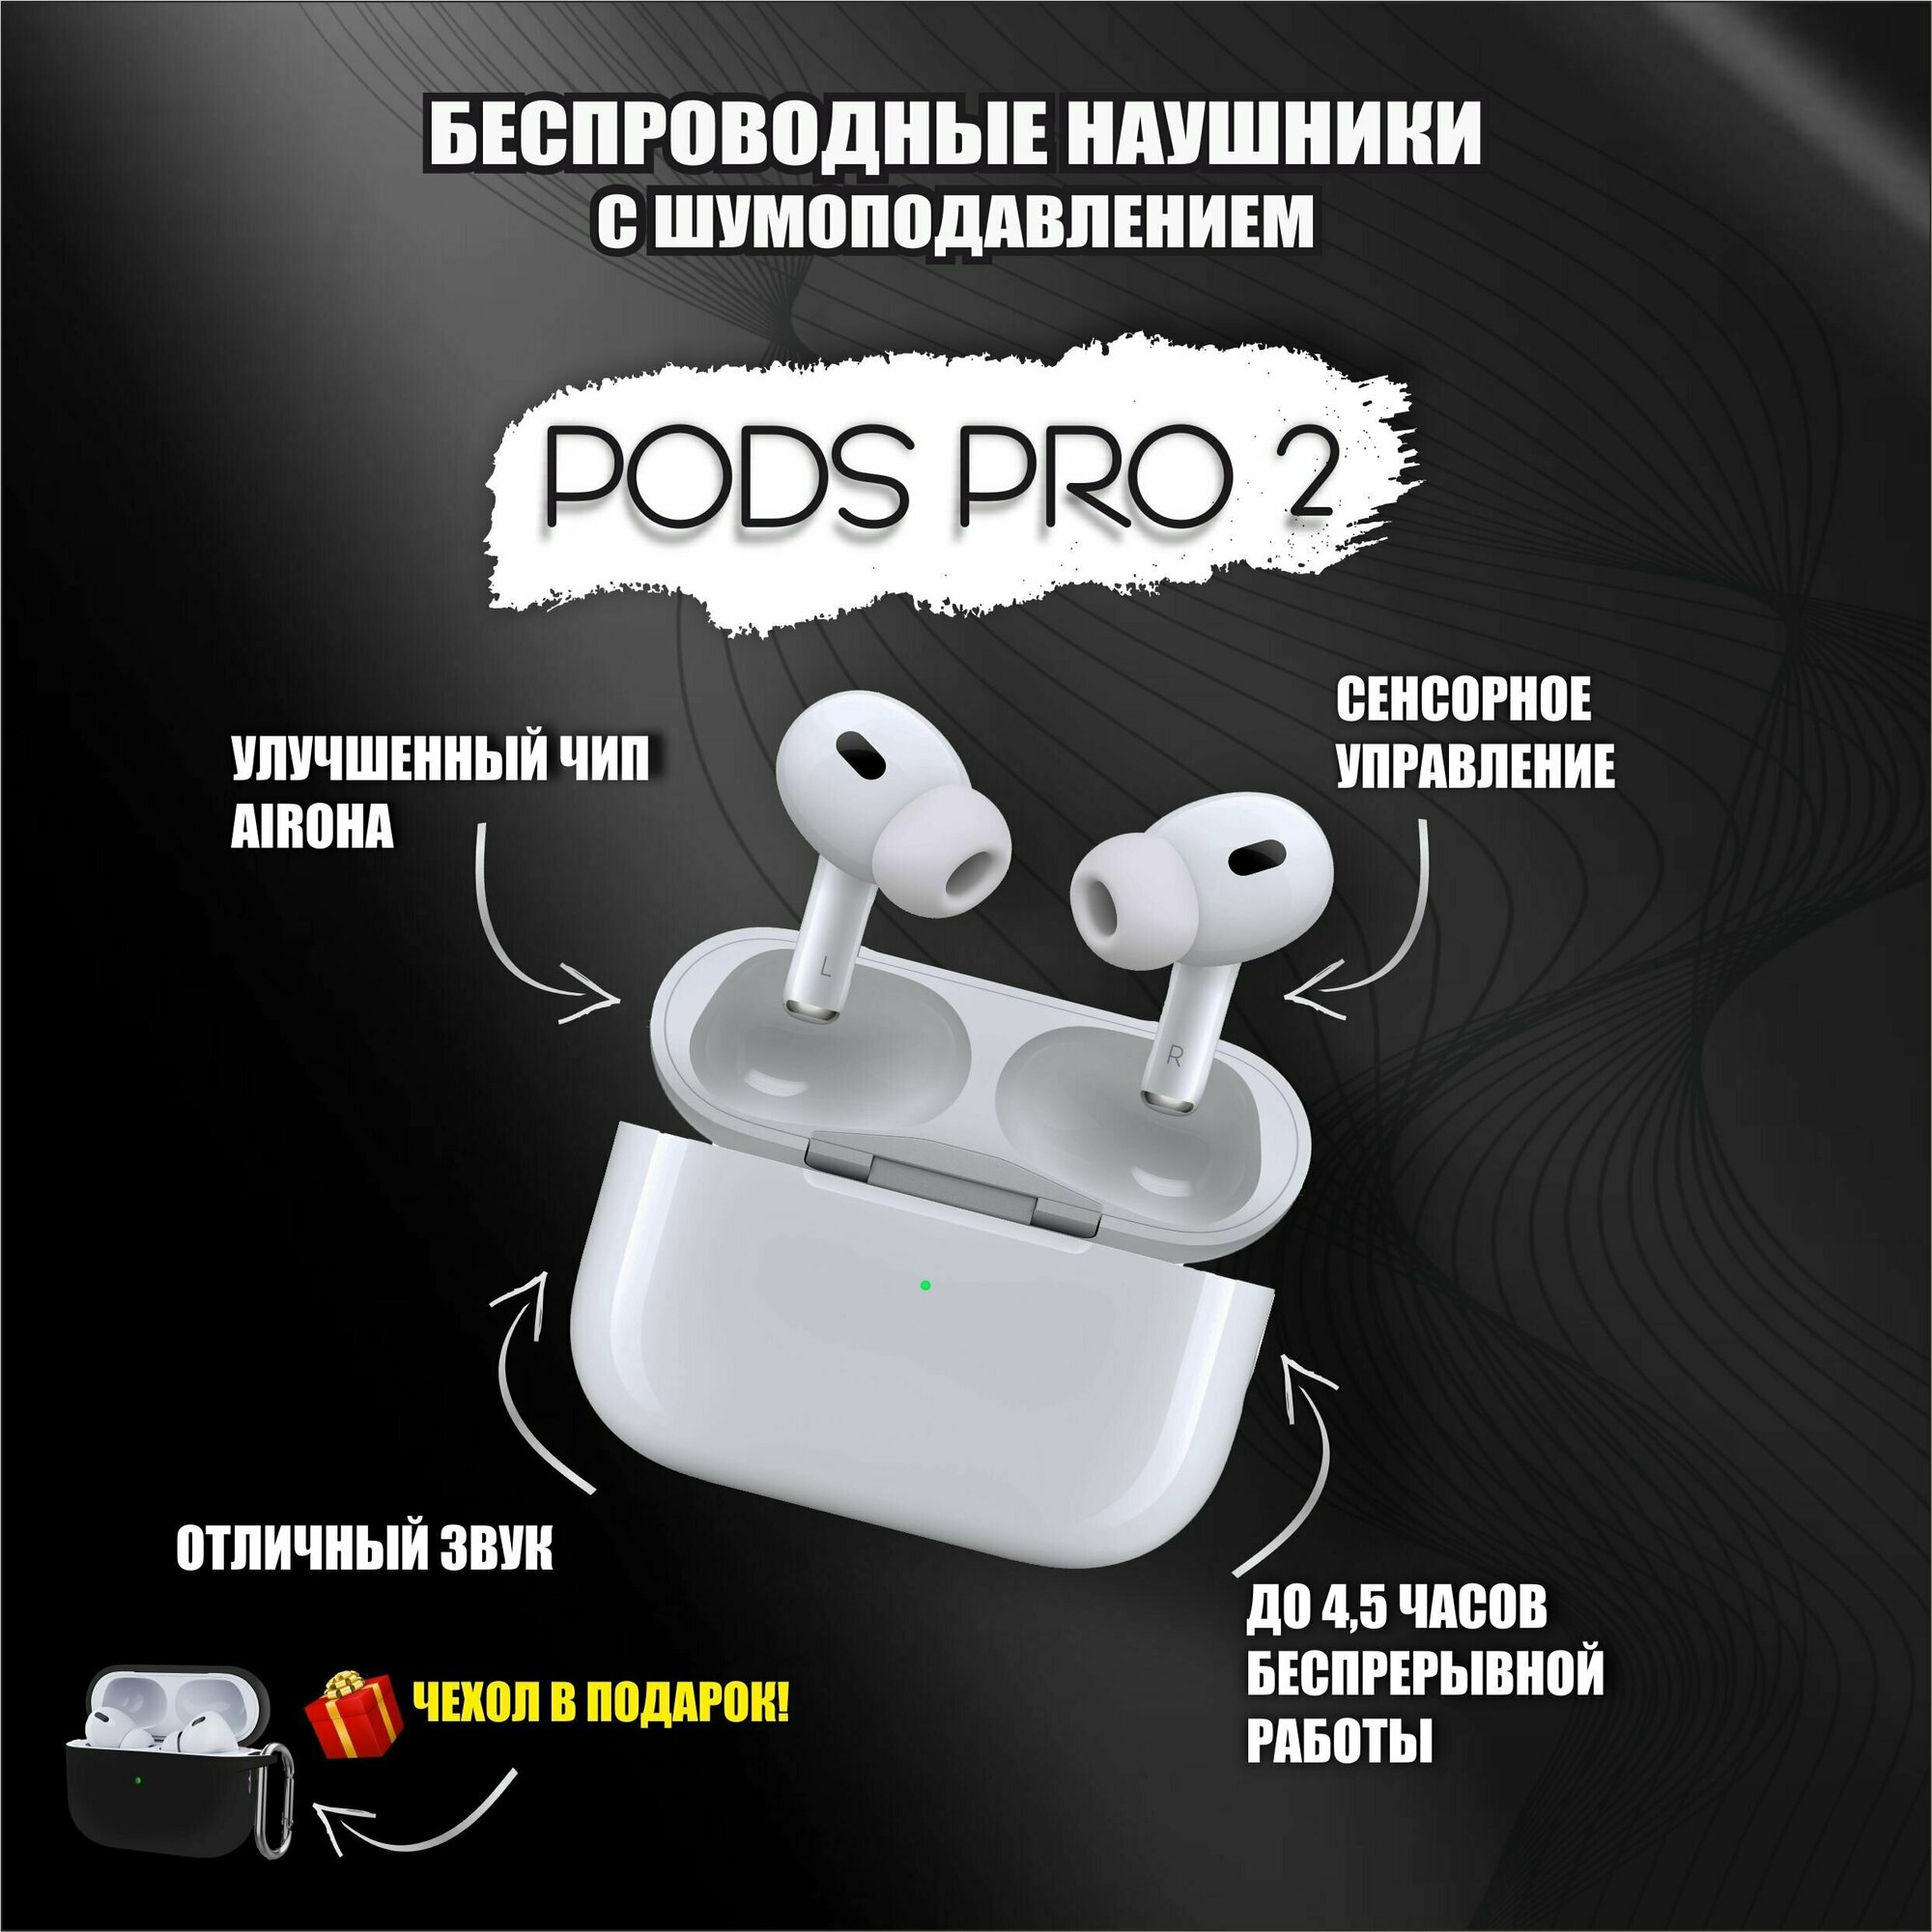 Наушники беспроводные с шумоподавлением PODS PRO 2 / версия PRO 2 PREMIUM+ / активное шумоподавление И прозрачность / сенсорное управление / bluetooth, для iOS, Android